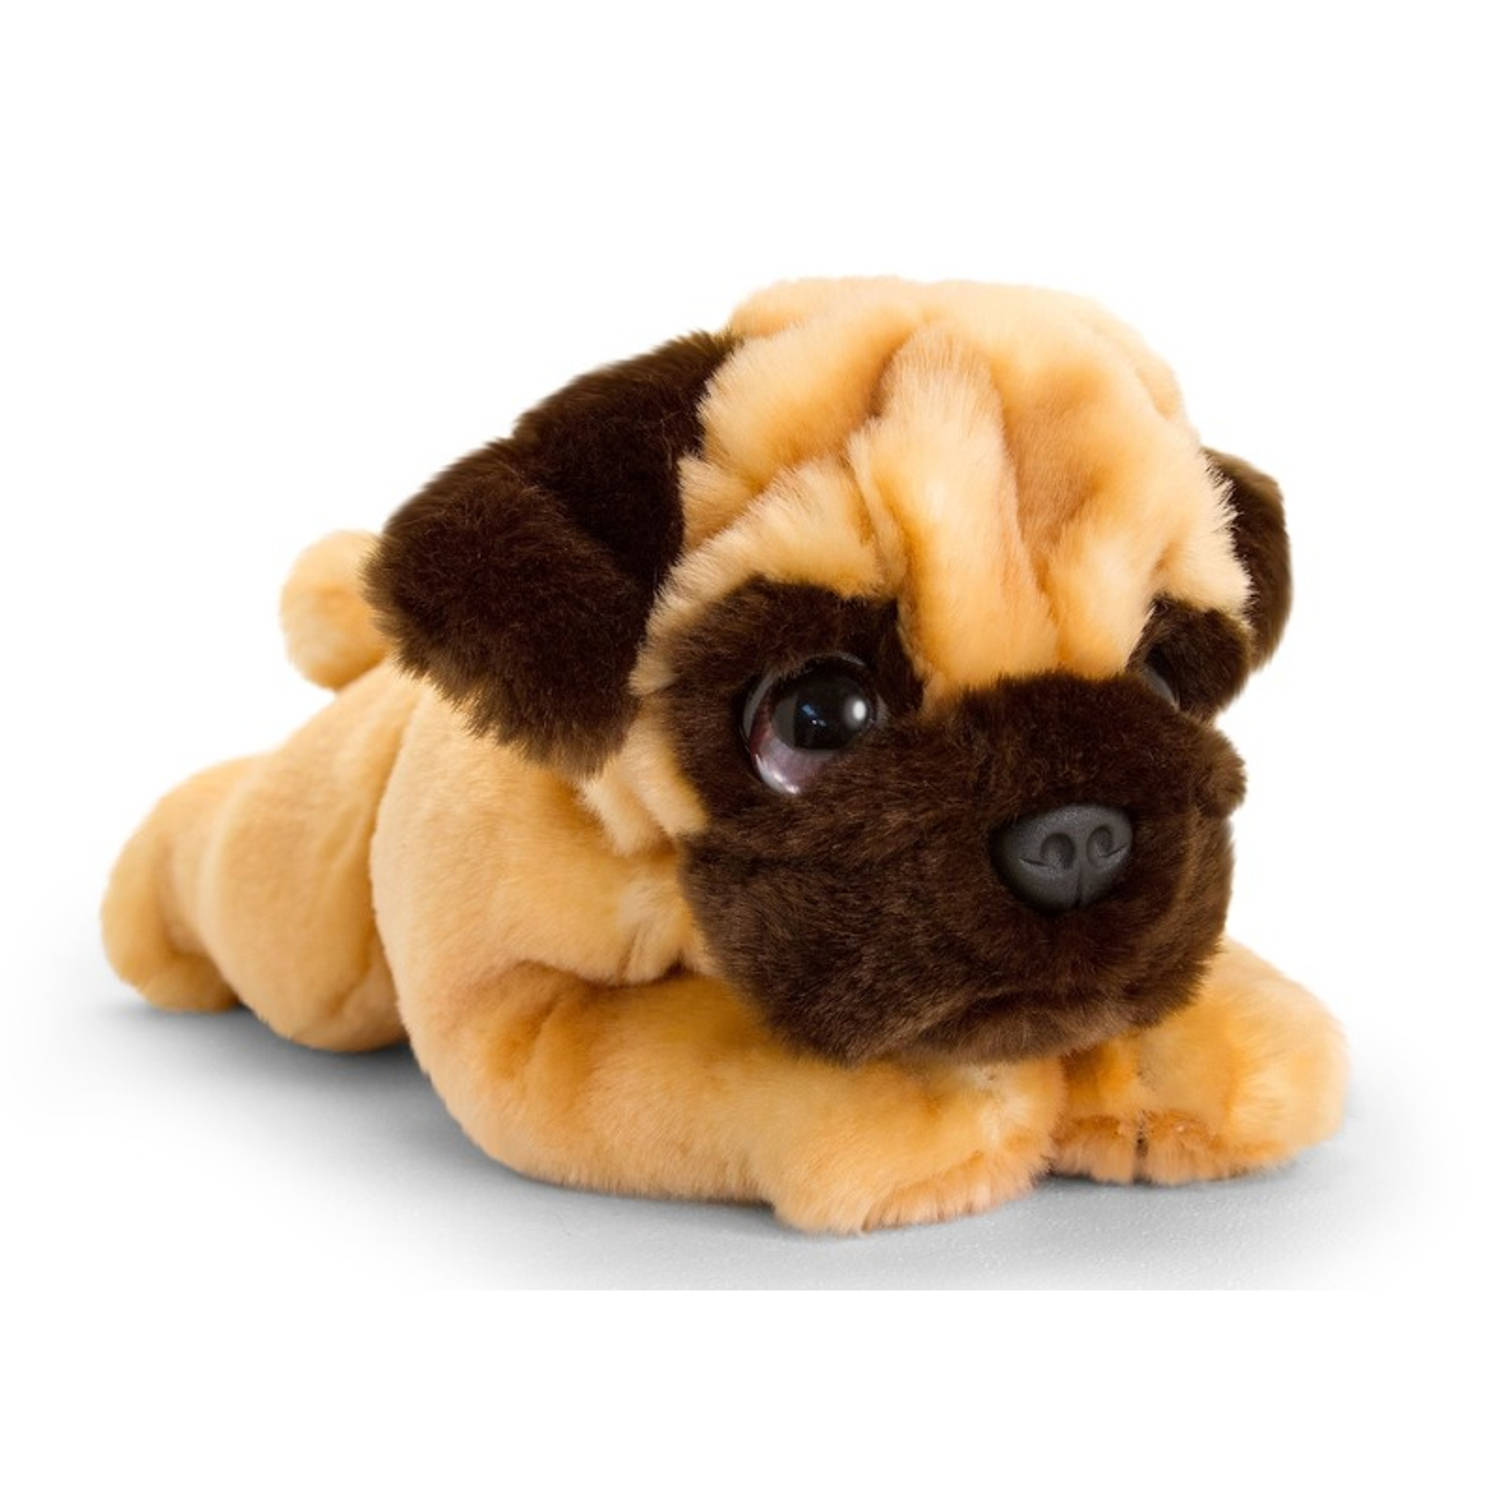 Keel Toys Pluche Mopshond Honden Knuffel 25 Cm - Honden Knuffeldieren - Speelgoed Voor Kind - Bruin